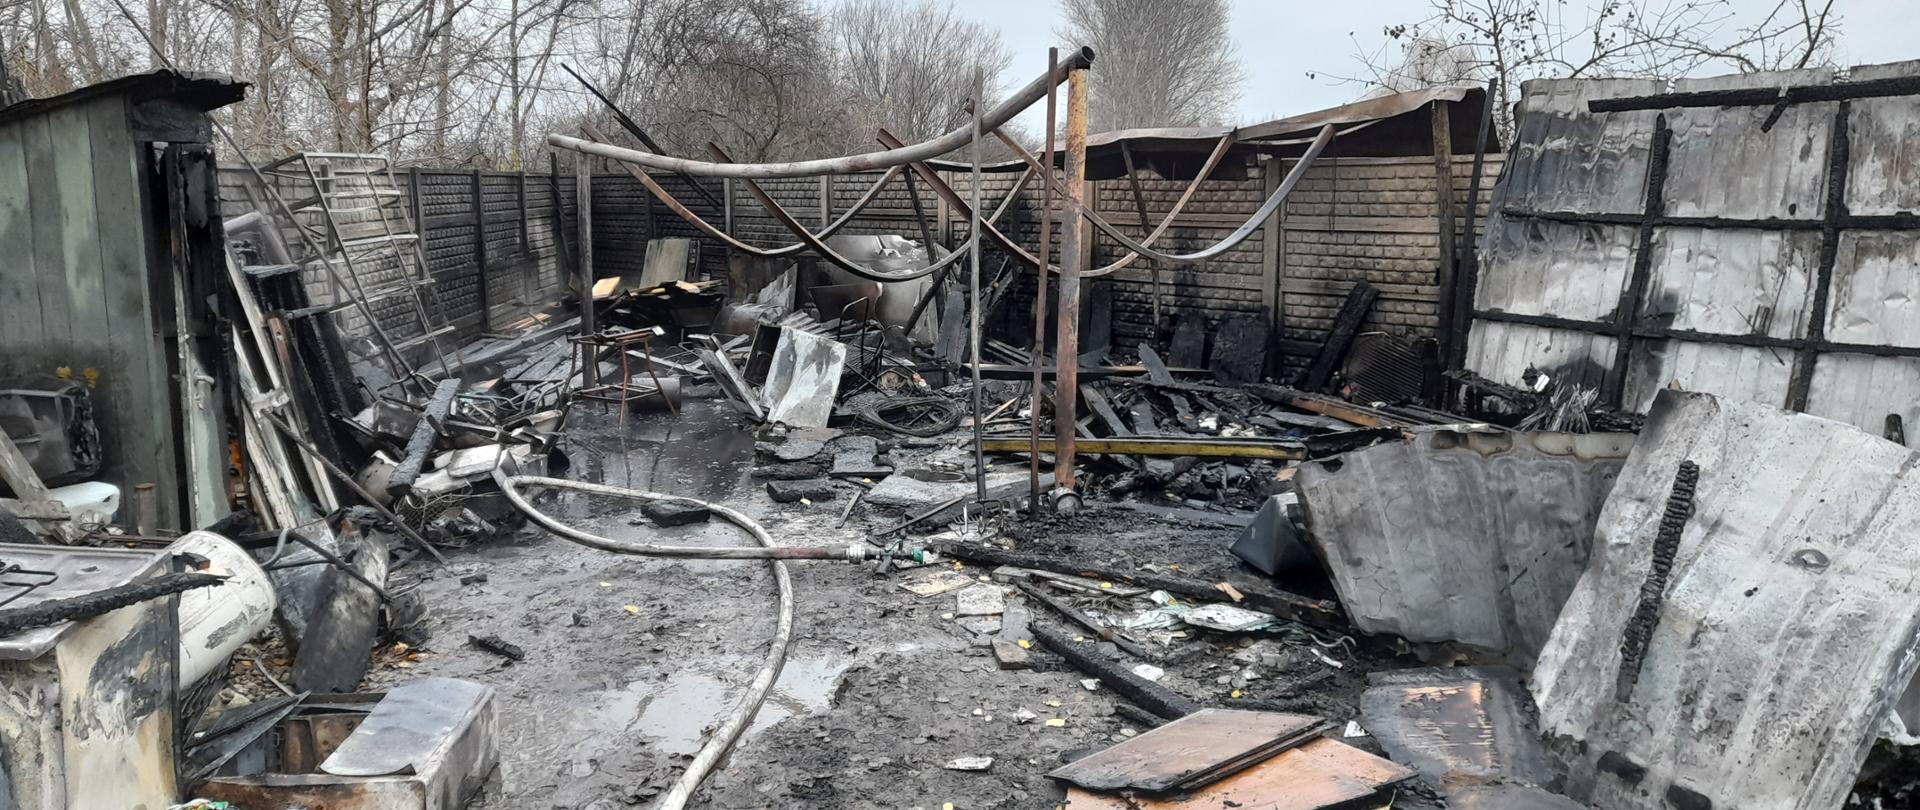 Zdjęcie przedstawia całkowicie spalony garaż wraz z wyposażeniem. Na zdjęciu widać ogrodzenie z płyt betonowych oraz pozostałości konstrukcji stalowej garażu 